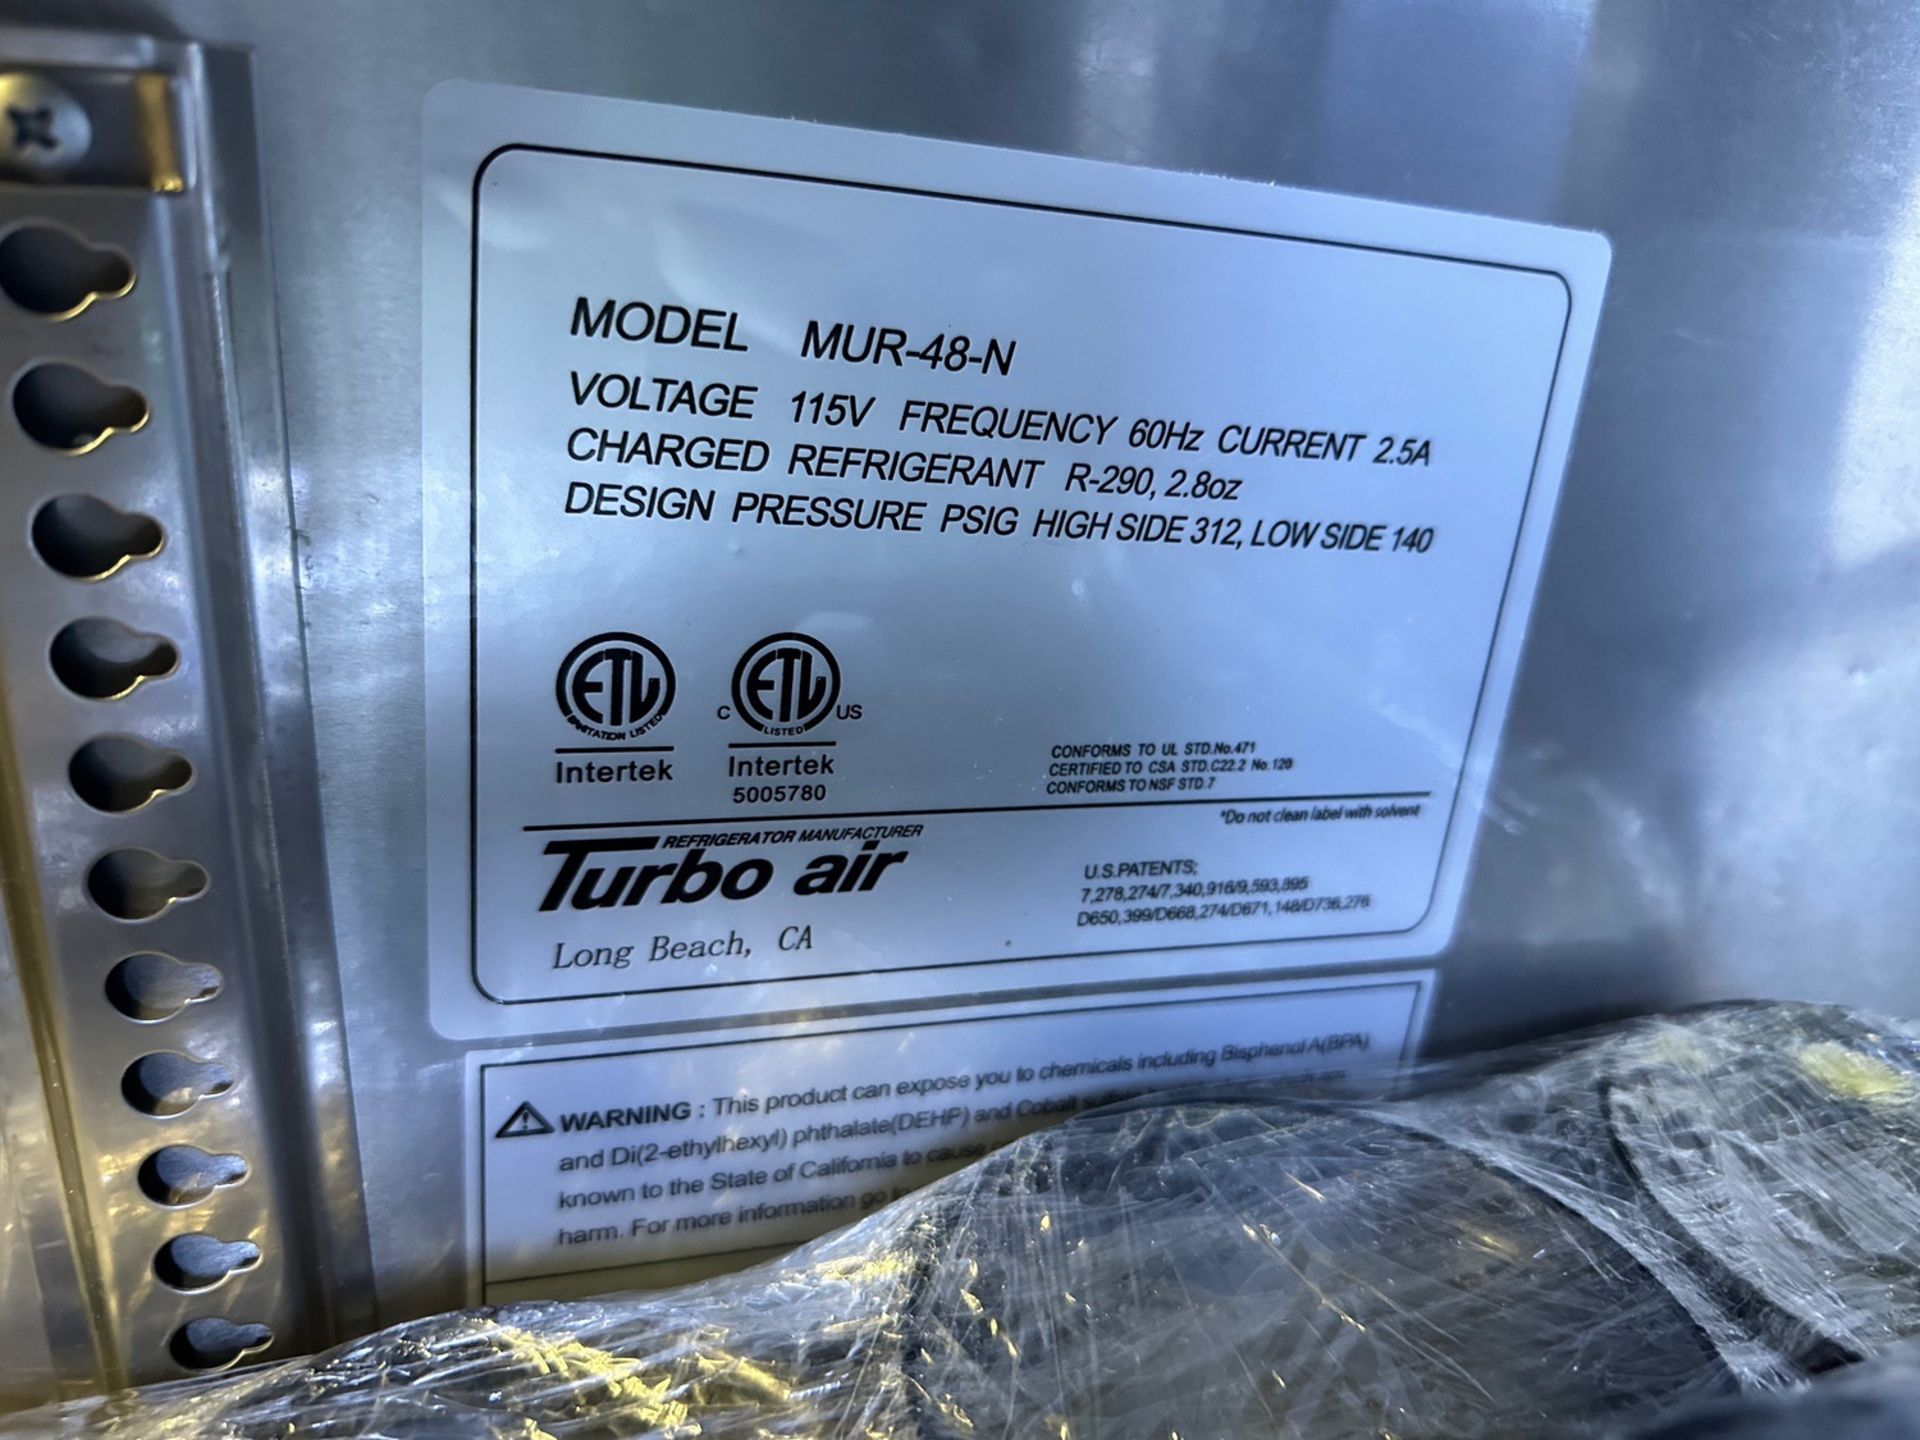 Turbo Air Stainless Steel Line Cooler - Model MUR-48-N - Image 2 of 2